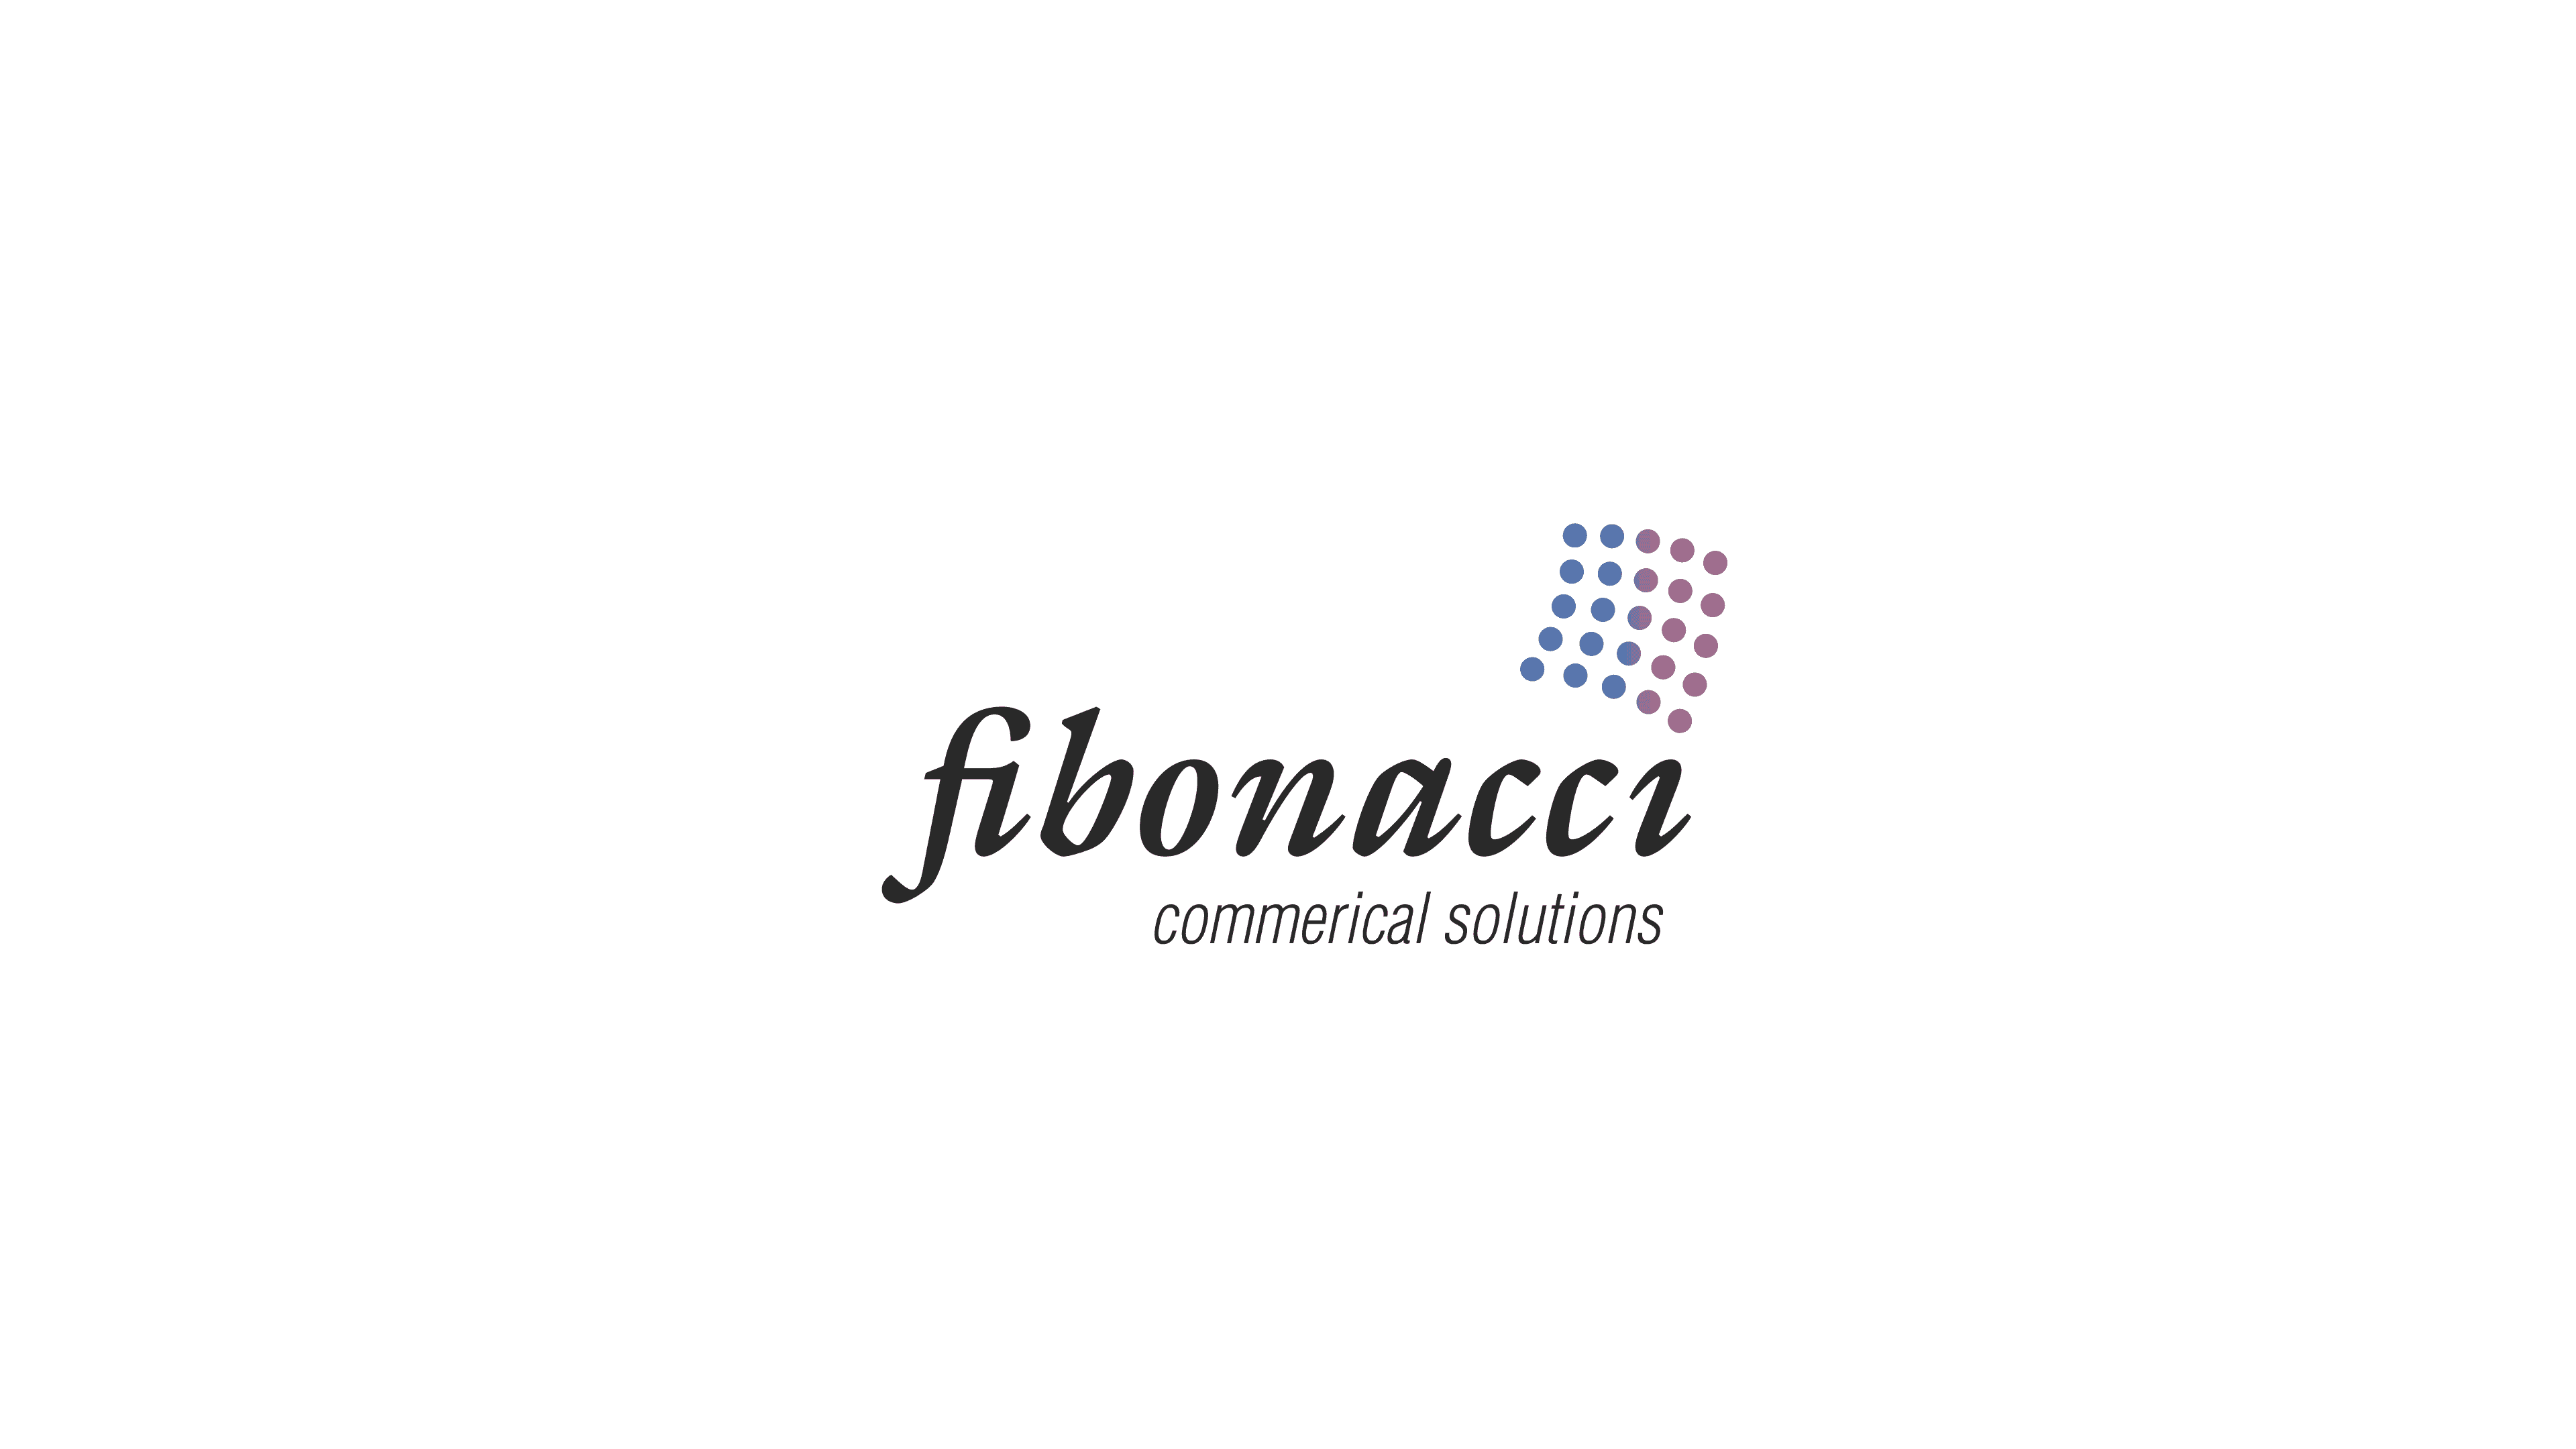 Fibonacci commercial solutions logo